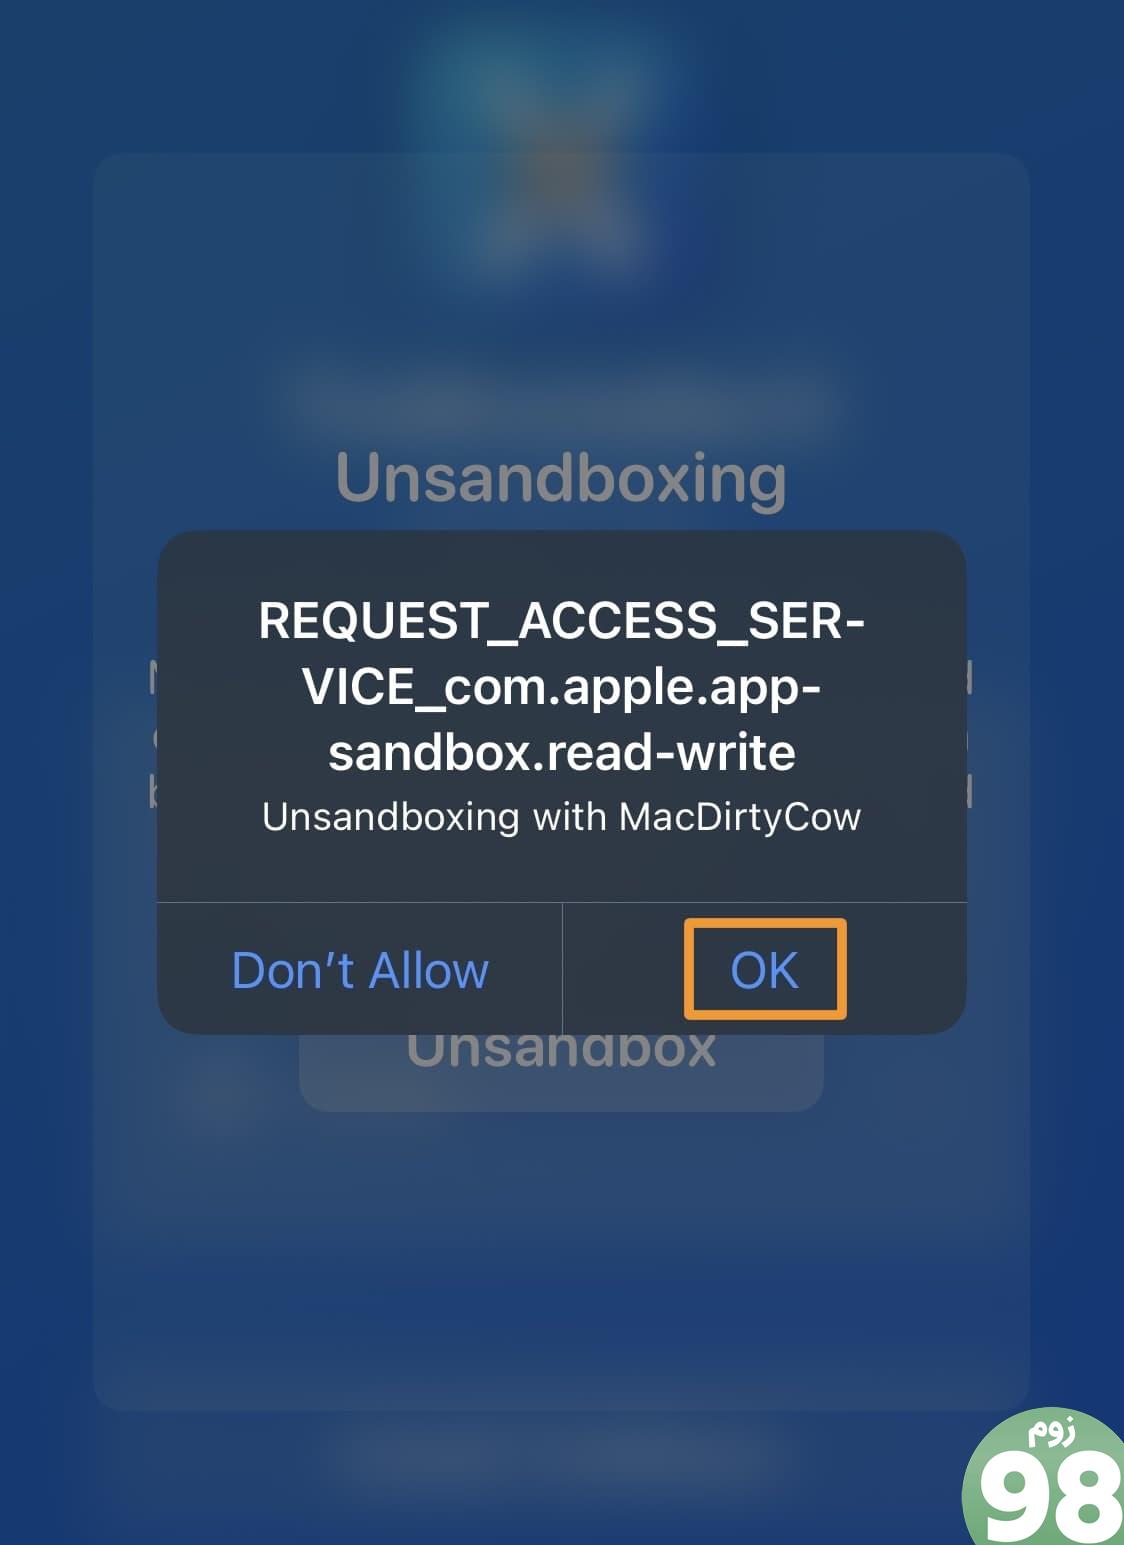 در اعلان unsandboxing روی دکمه OK ضربه بزنید.